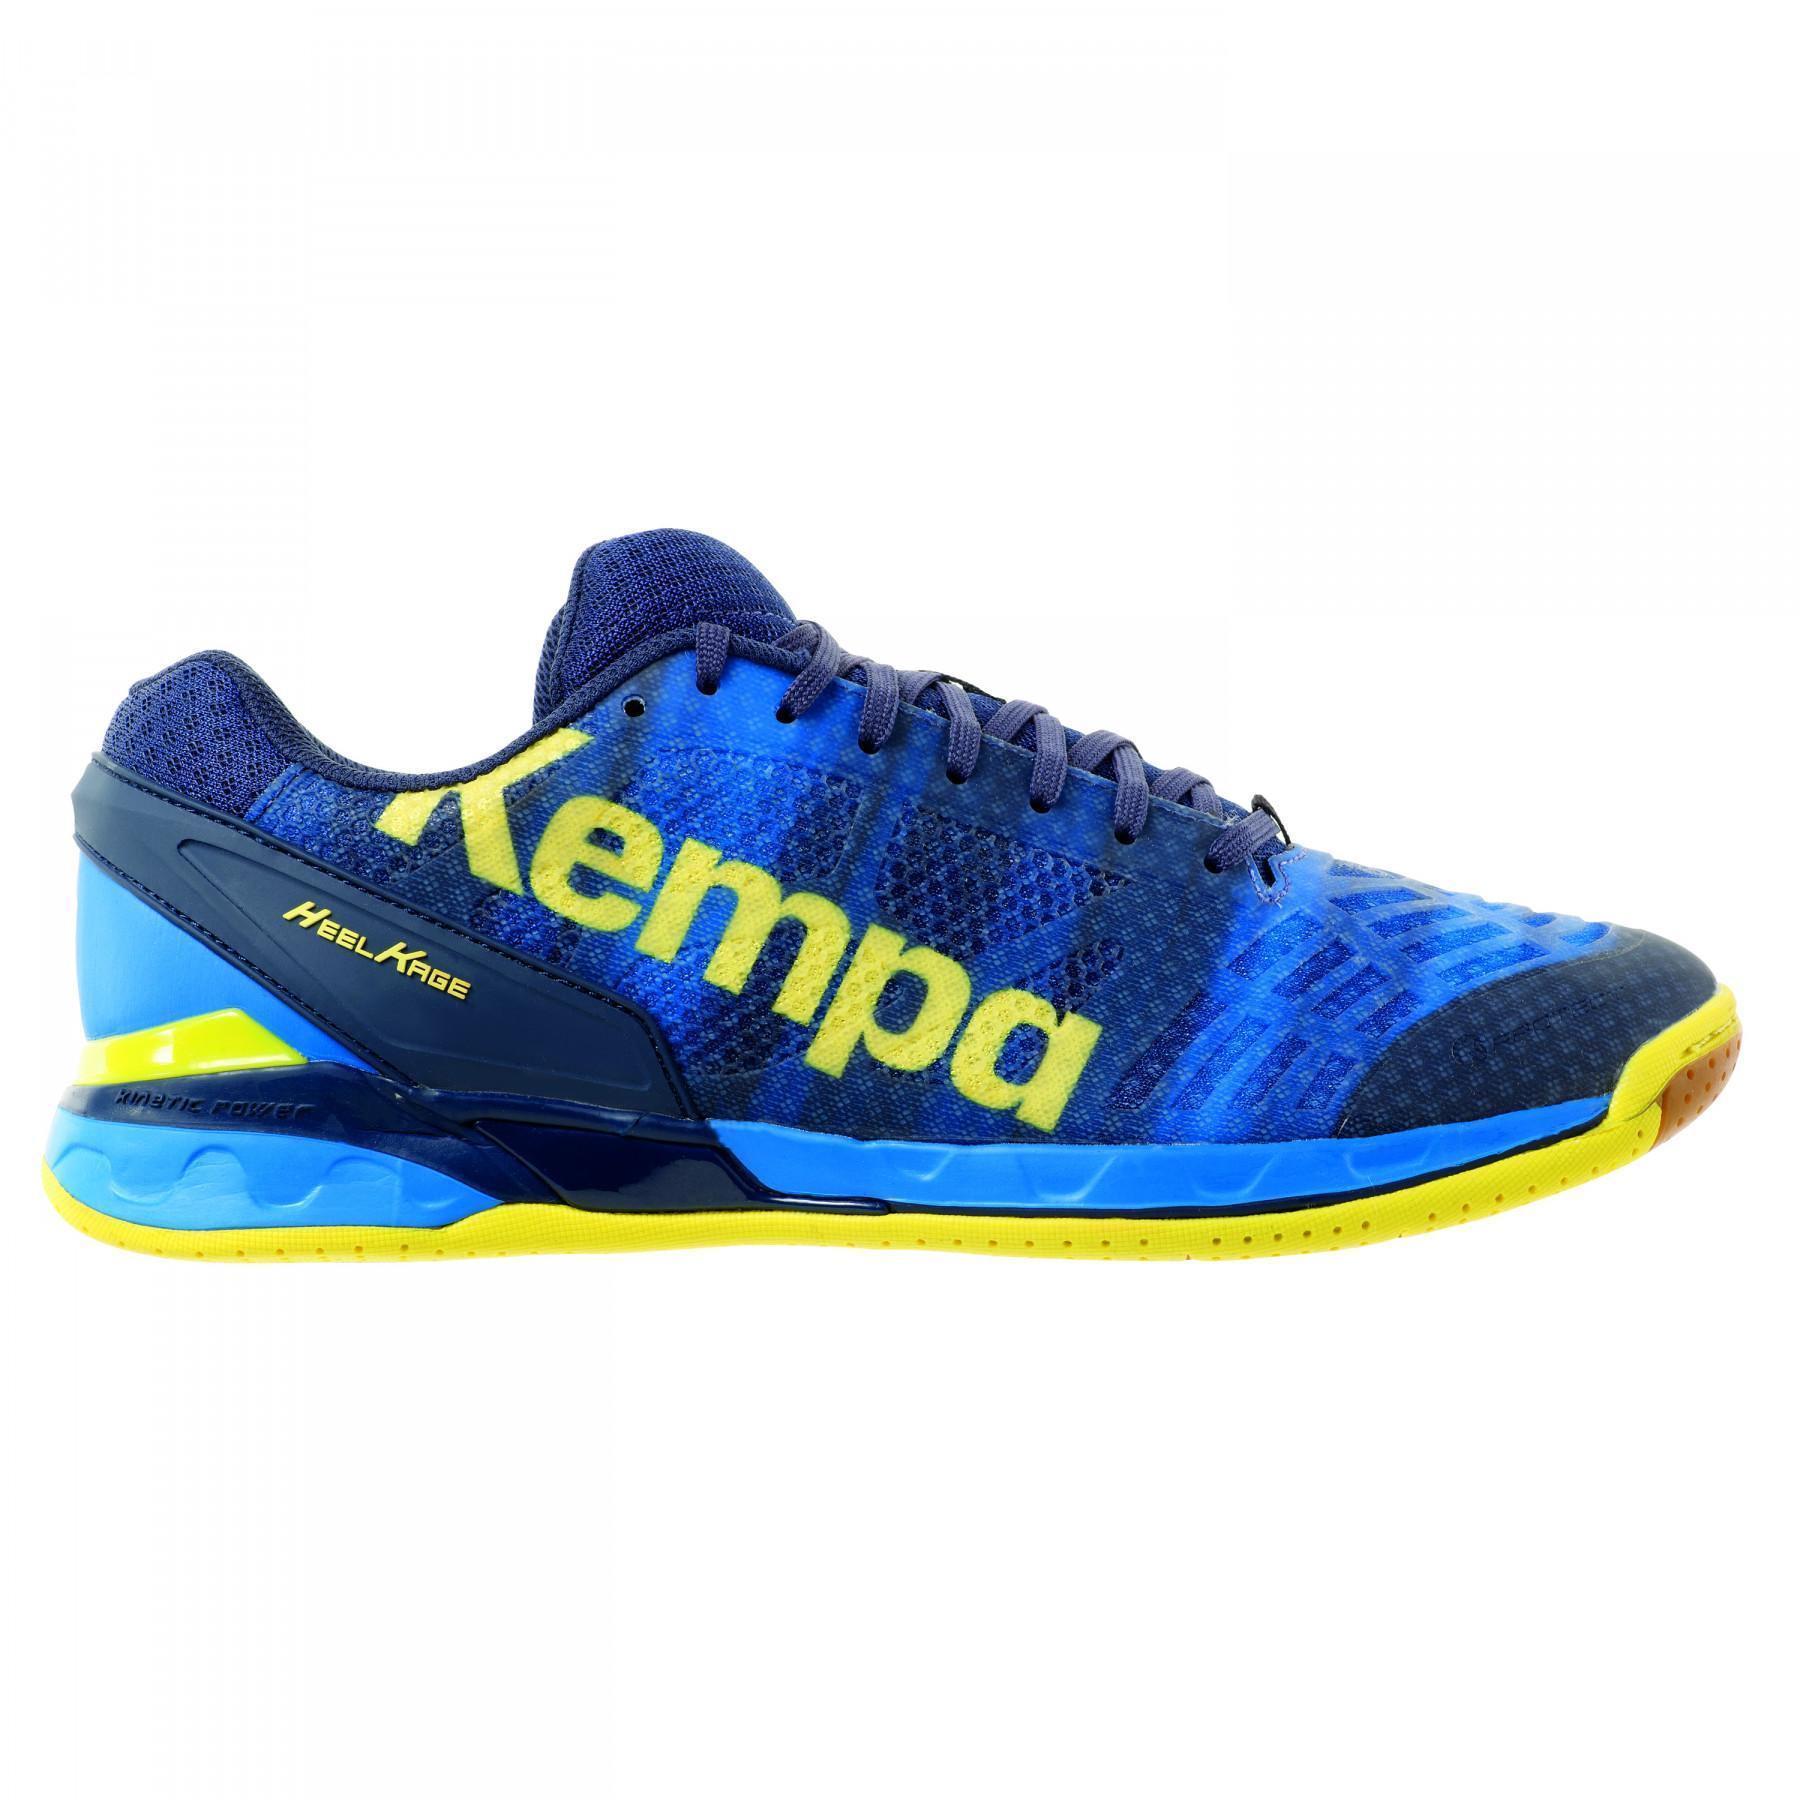 Zapatos Kempa Attack one bleu/jaune